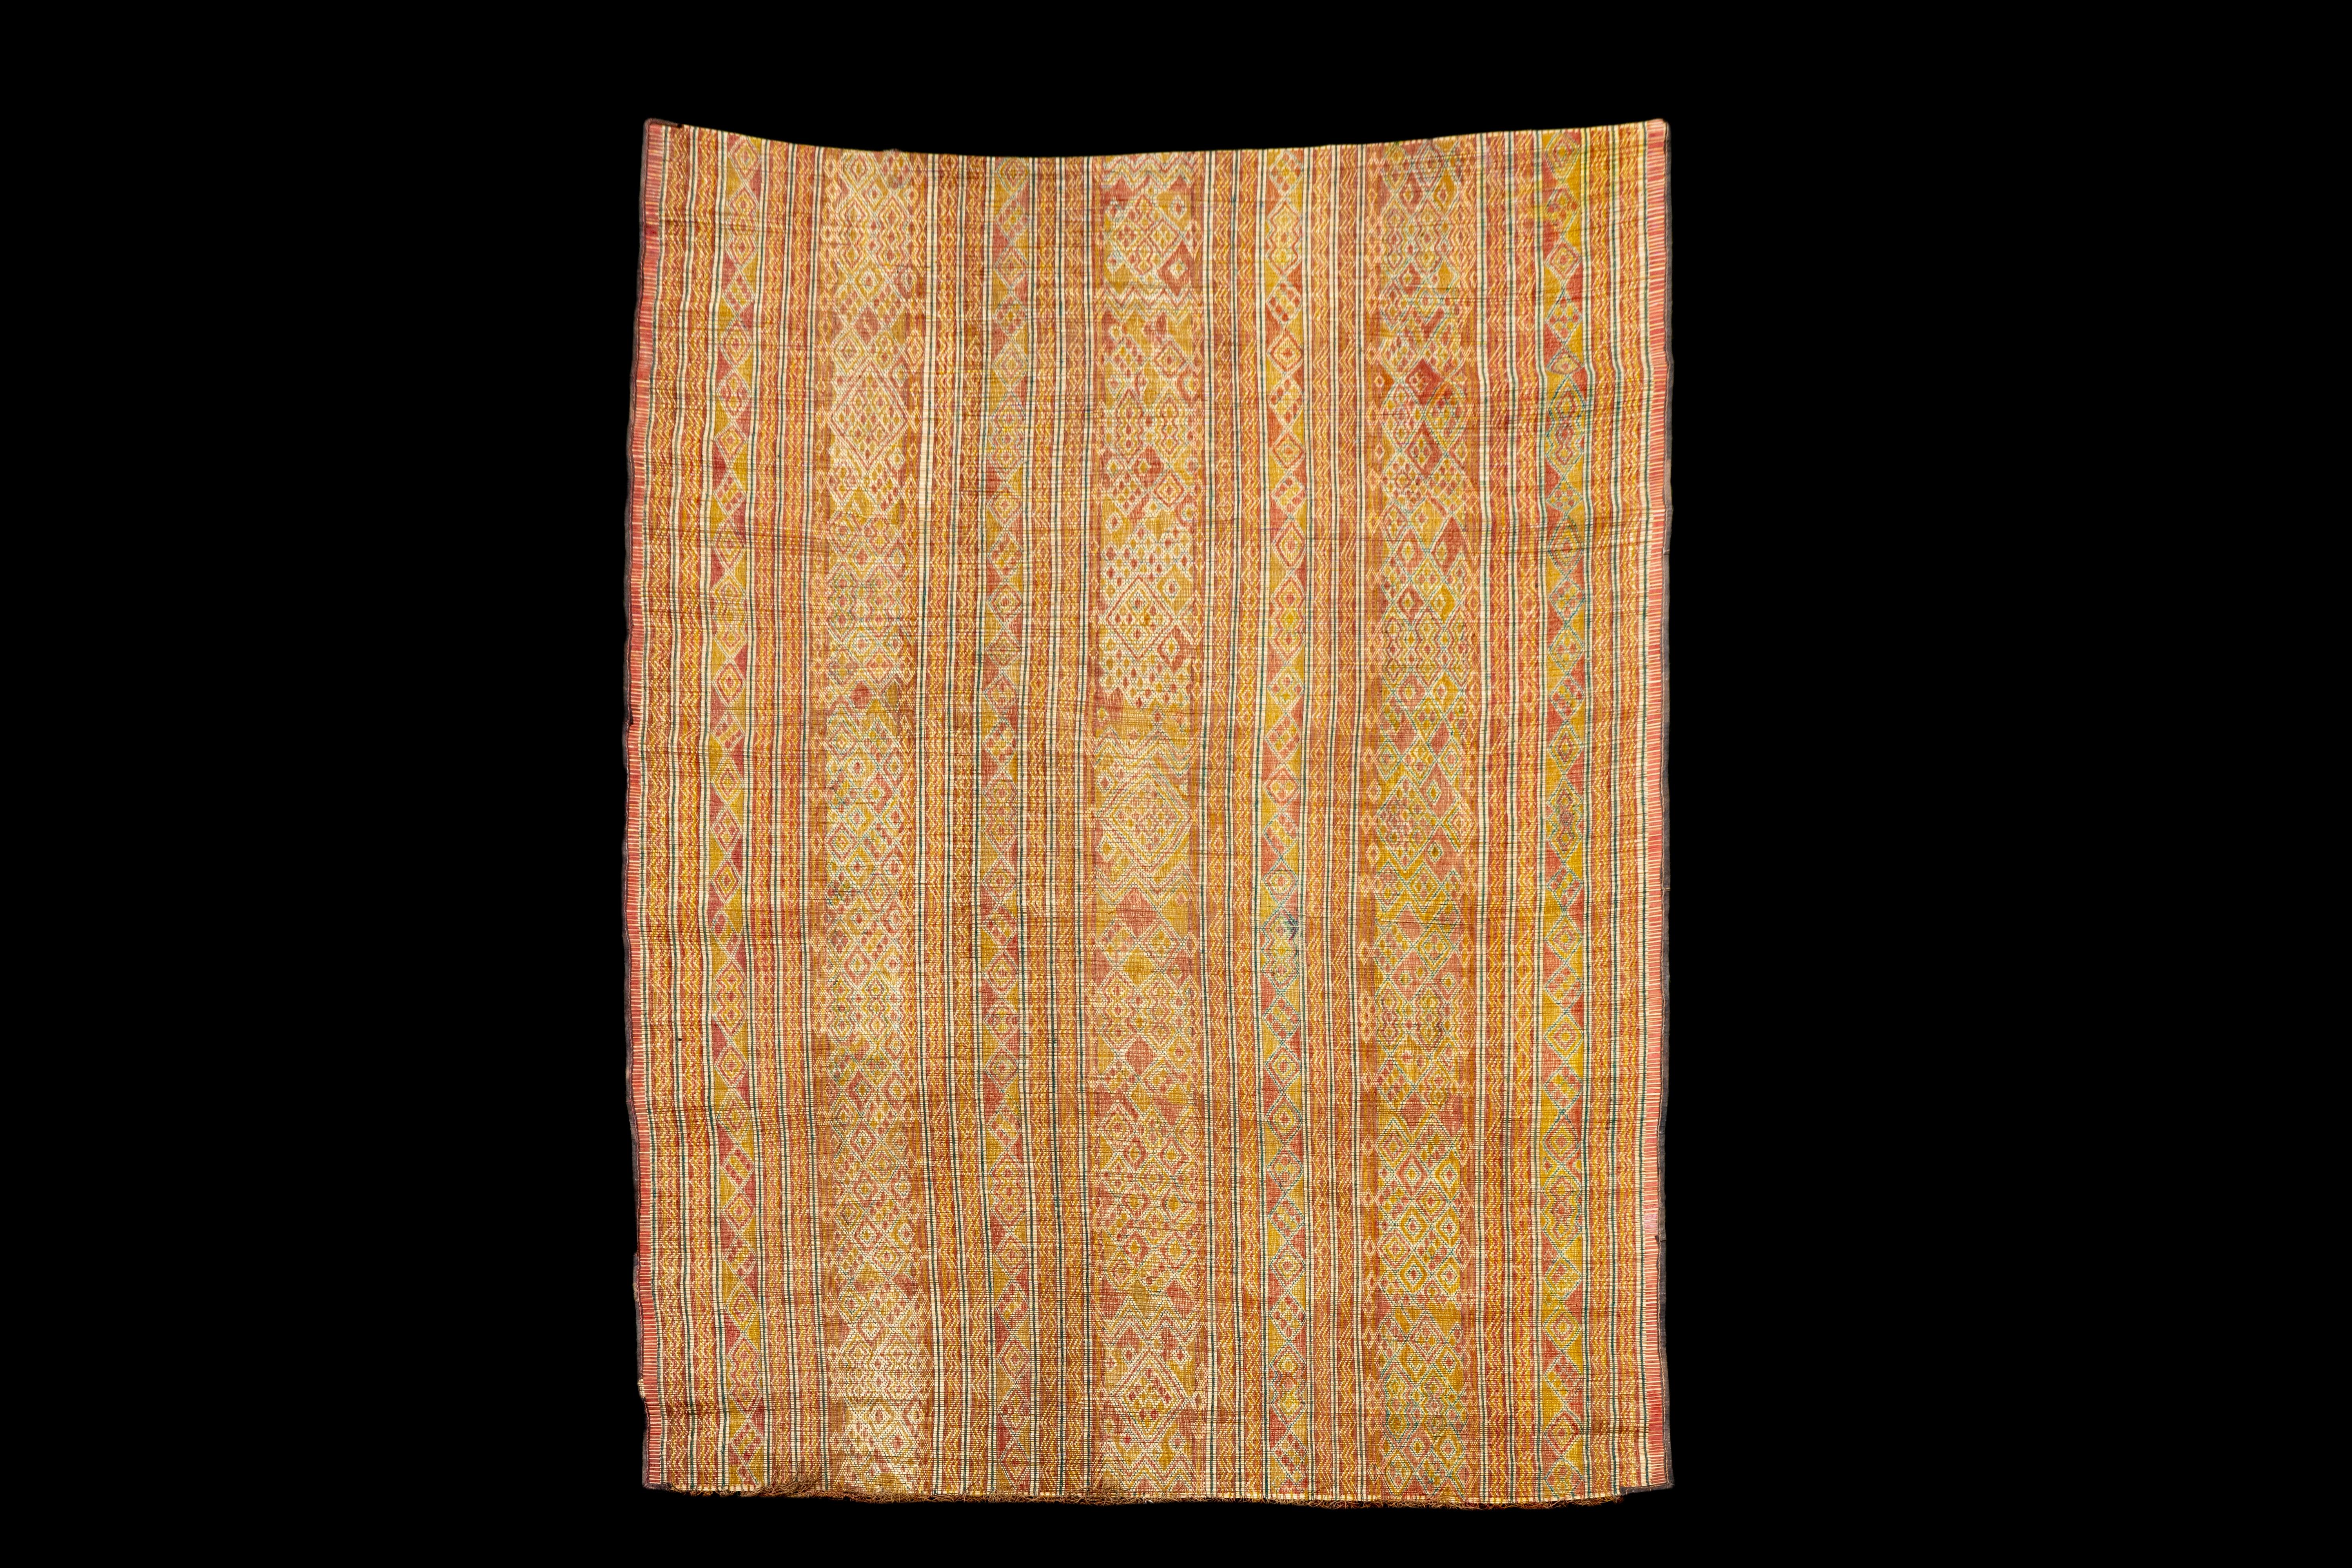 Die mauretanische Matte oder der mauretanische Teppich sind ein echtes Zeugnis des reichen Erbes und der Handwerkskunst der nordafrikanischen Kultur. Diese von den Tuareg-Stämmen Mauretaniens in Handarbeit hergestellte marokkanische Ledermatte ist